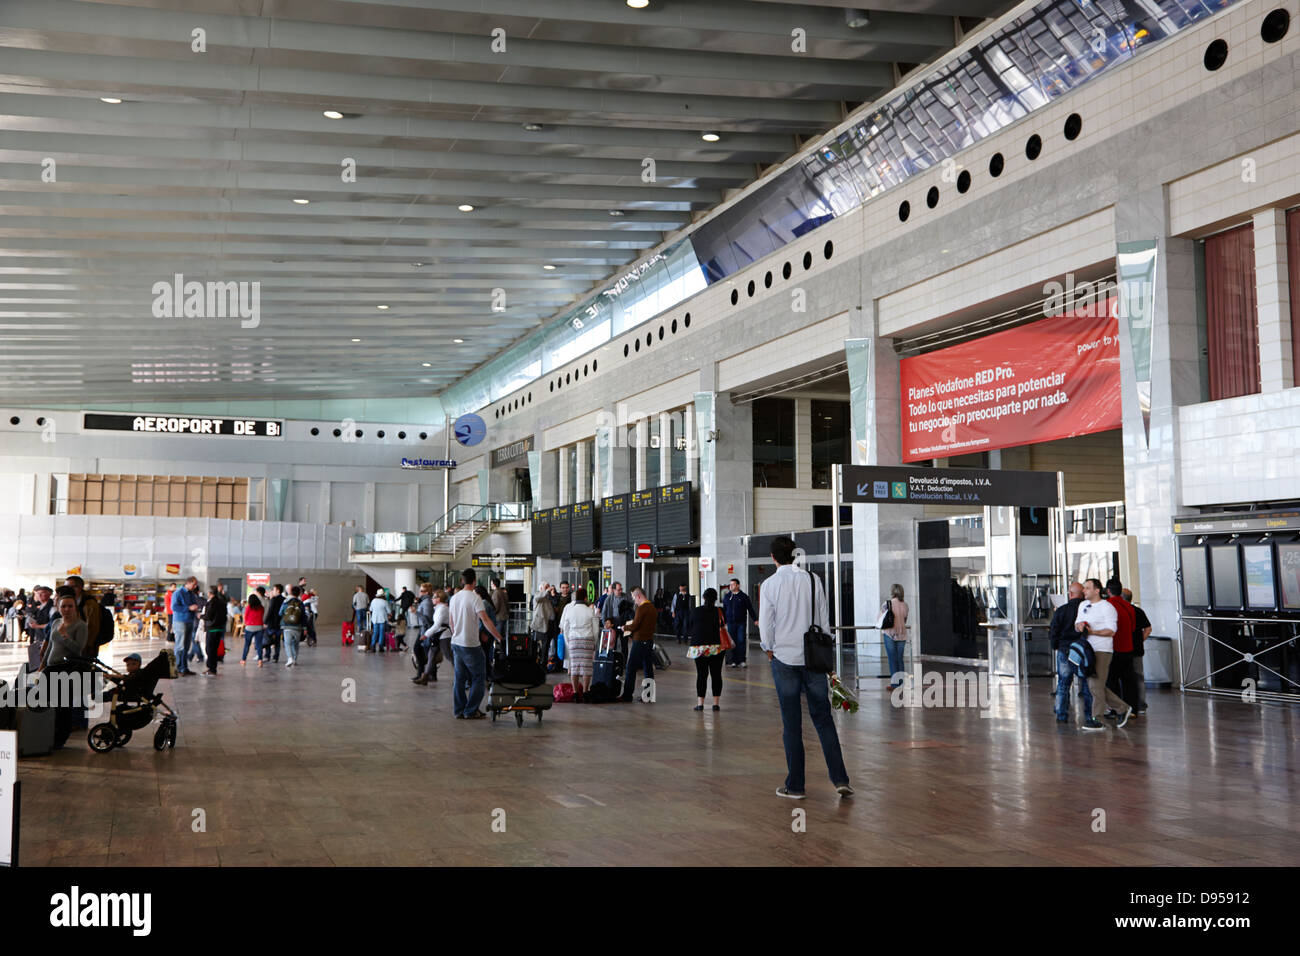 Terminal de l'aéroport El Prat de barcelone catalogne espagne 2 Banque D'Images